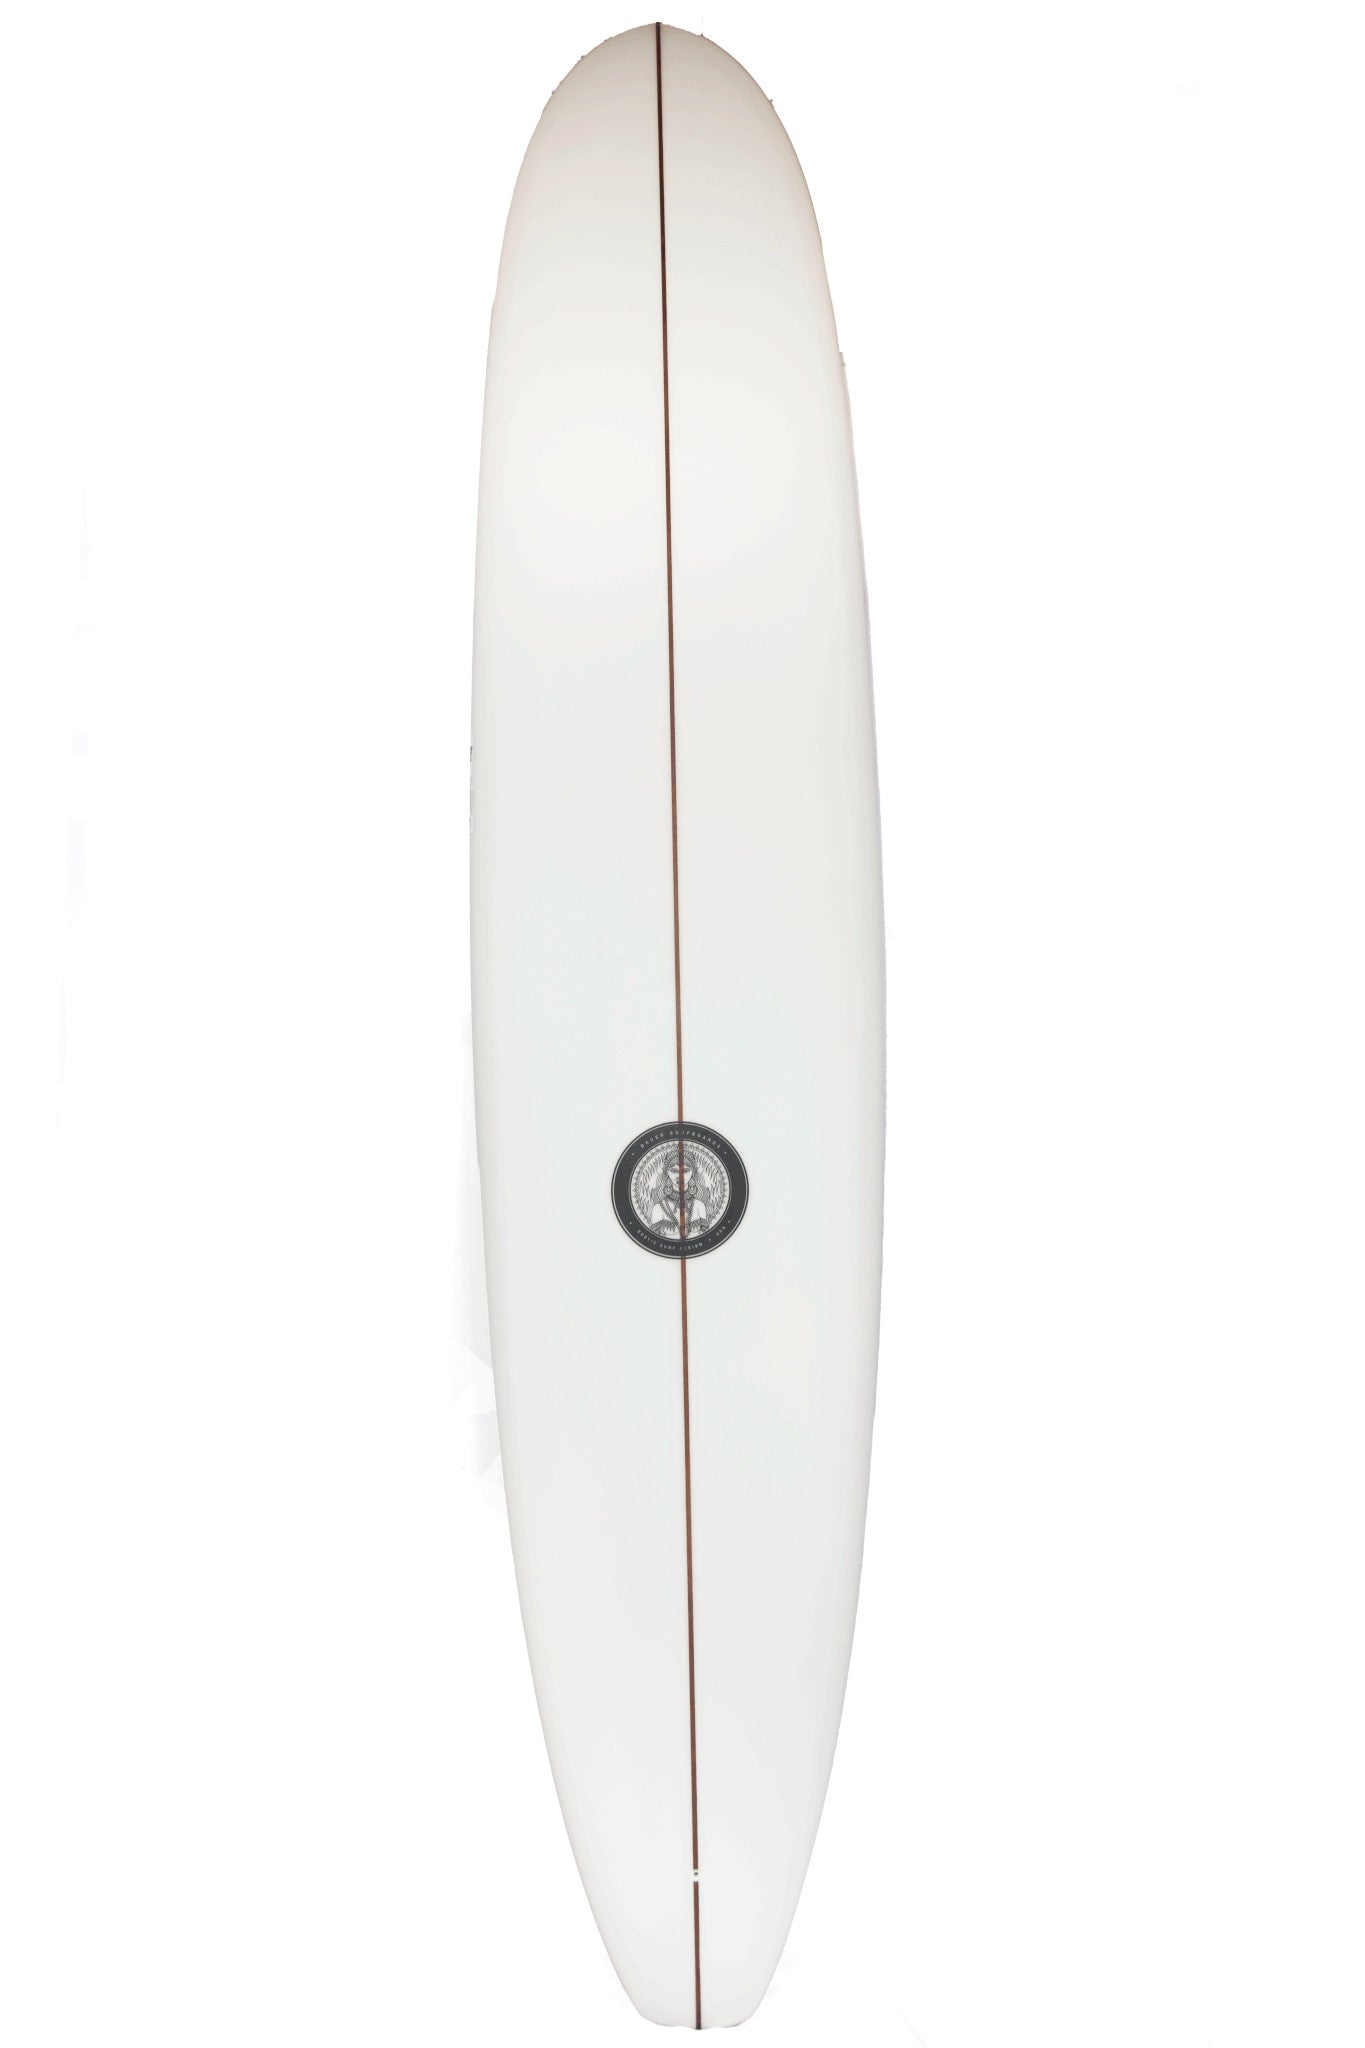 9'2" Bauer Surfboards Speed Log - Sanded